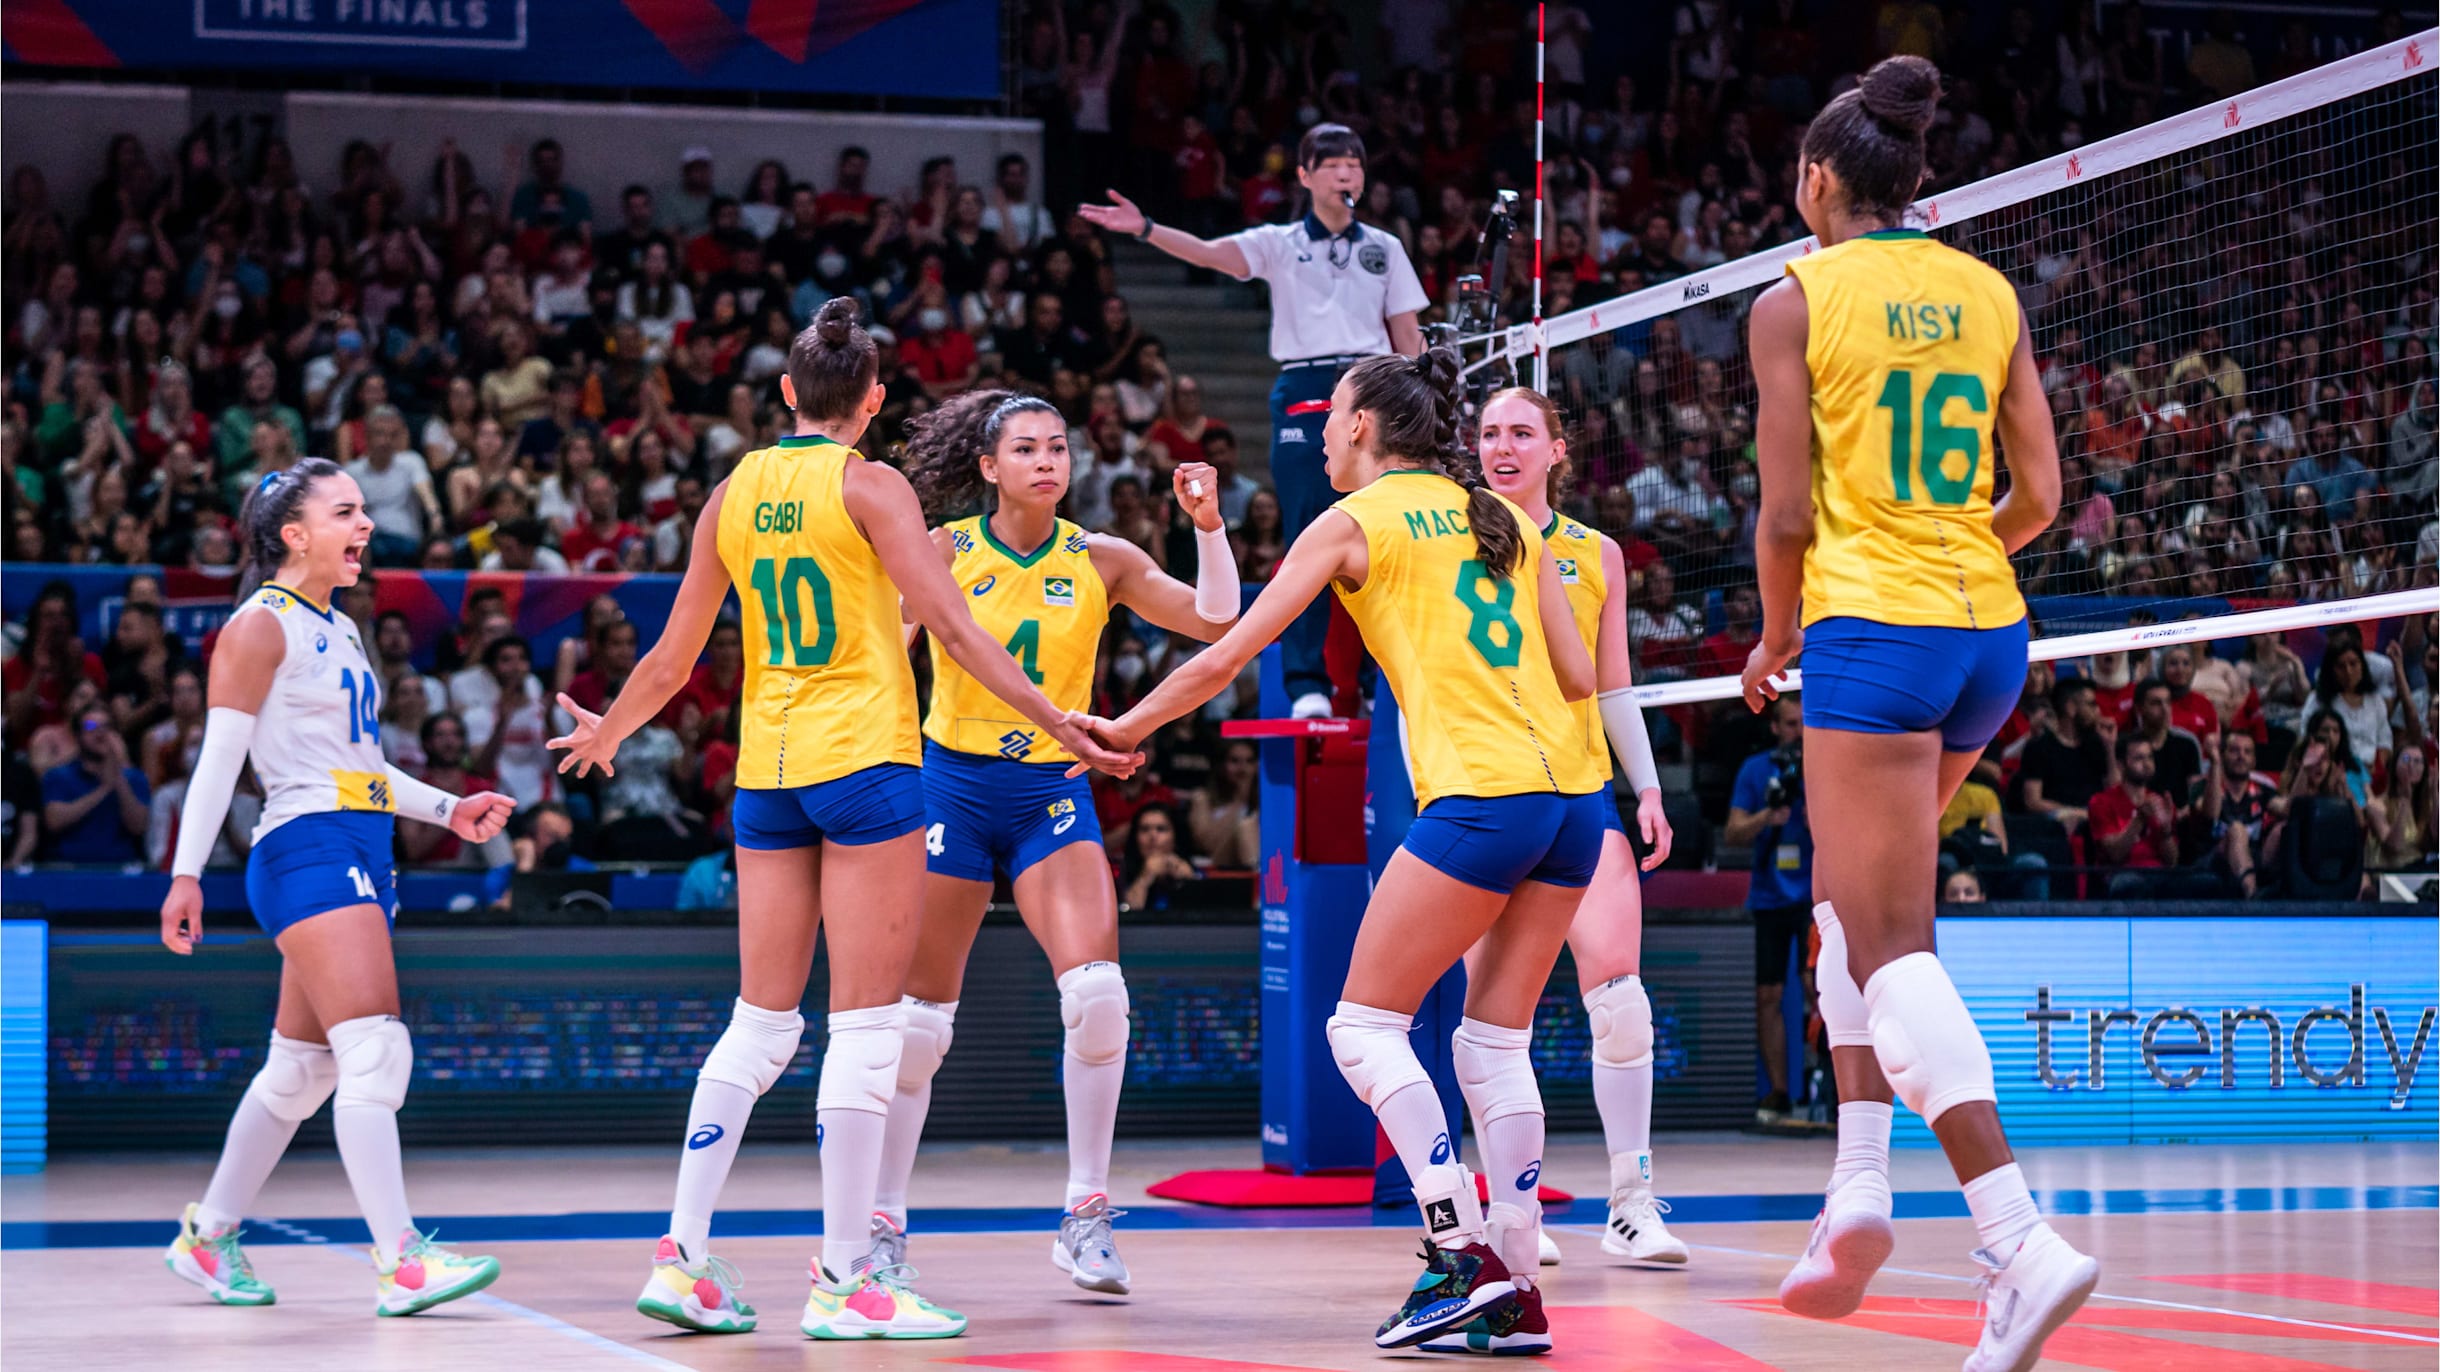 Brasil x Quênia no vôlei feminino; veja horário e onde assistir ao vivo e  online · Notícias da TV